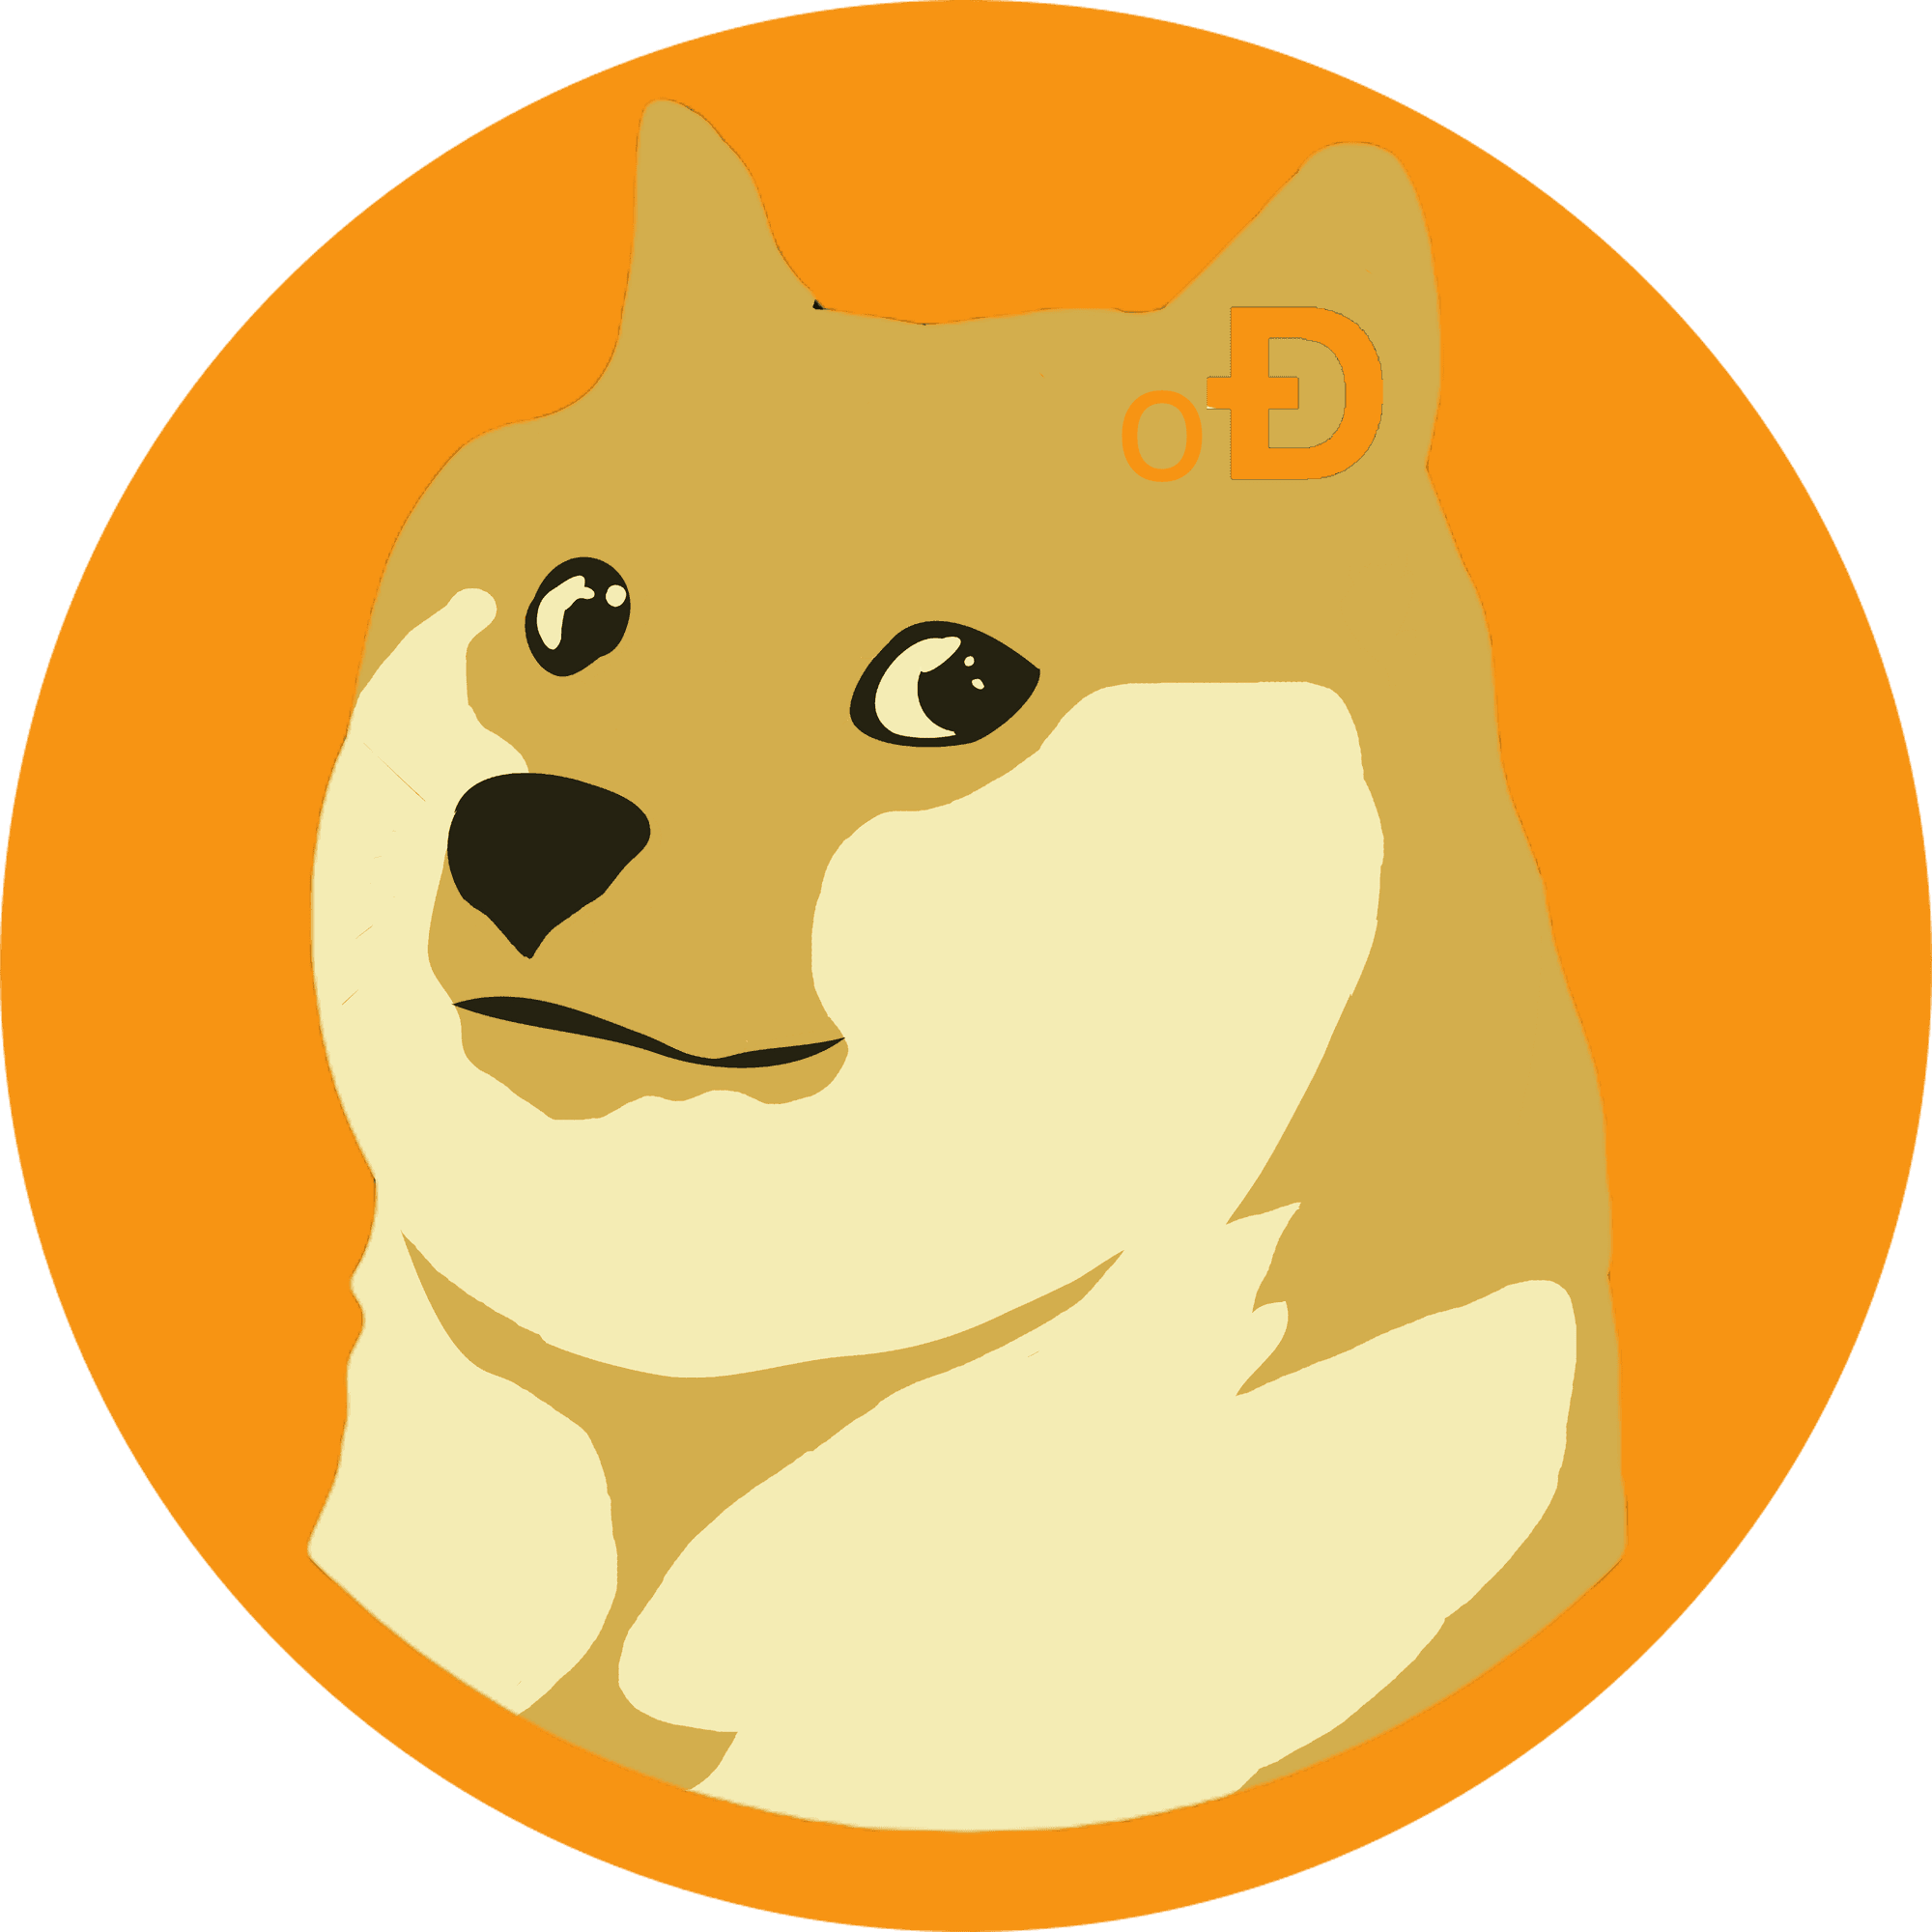 Ordinal Doge $oDOGE - The Bitcoin DOGE! - Emblem Vault Legacy | OpenSea